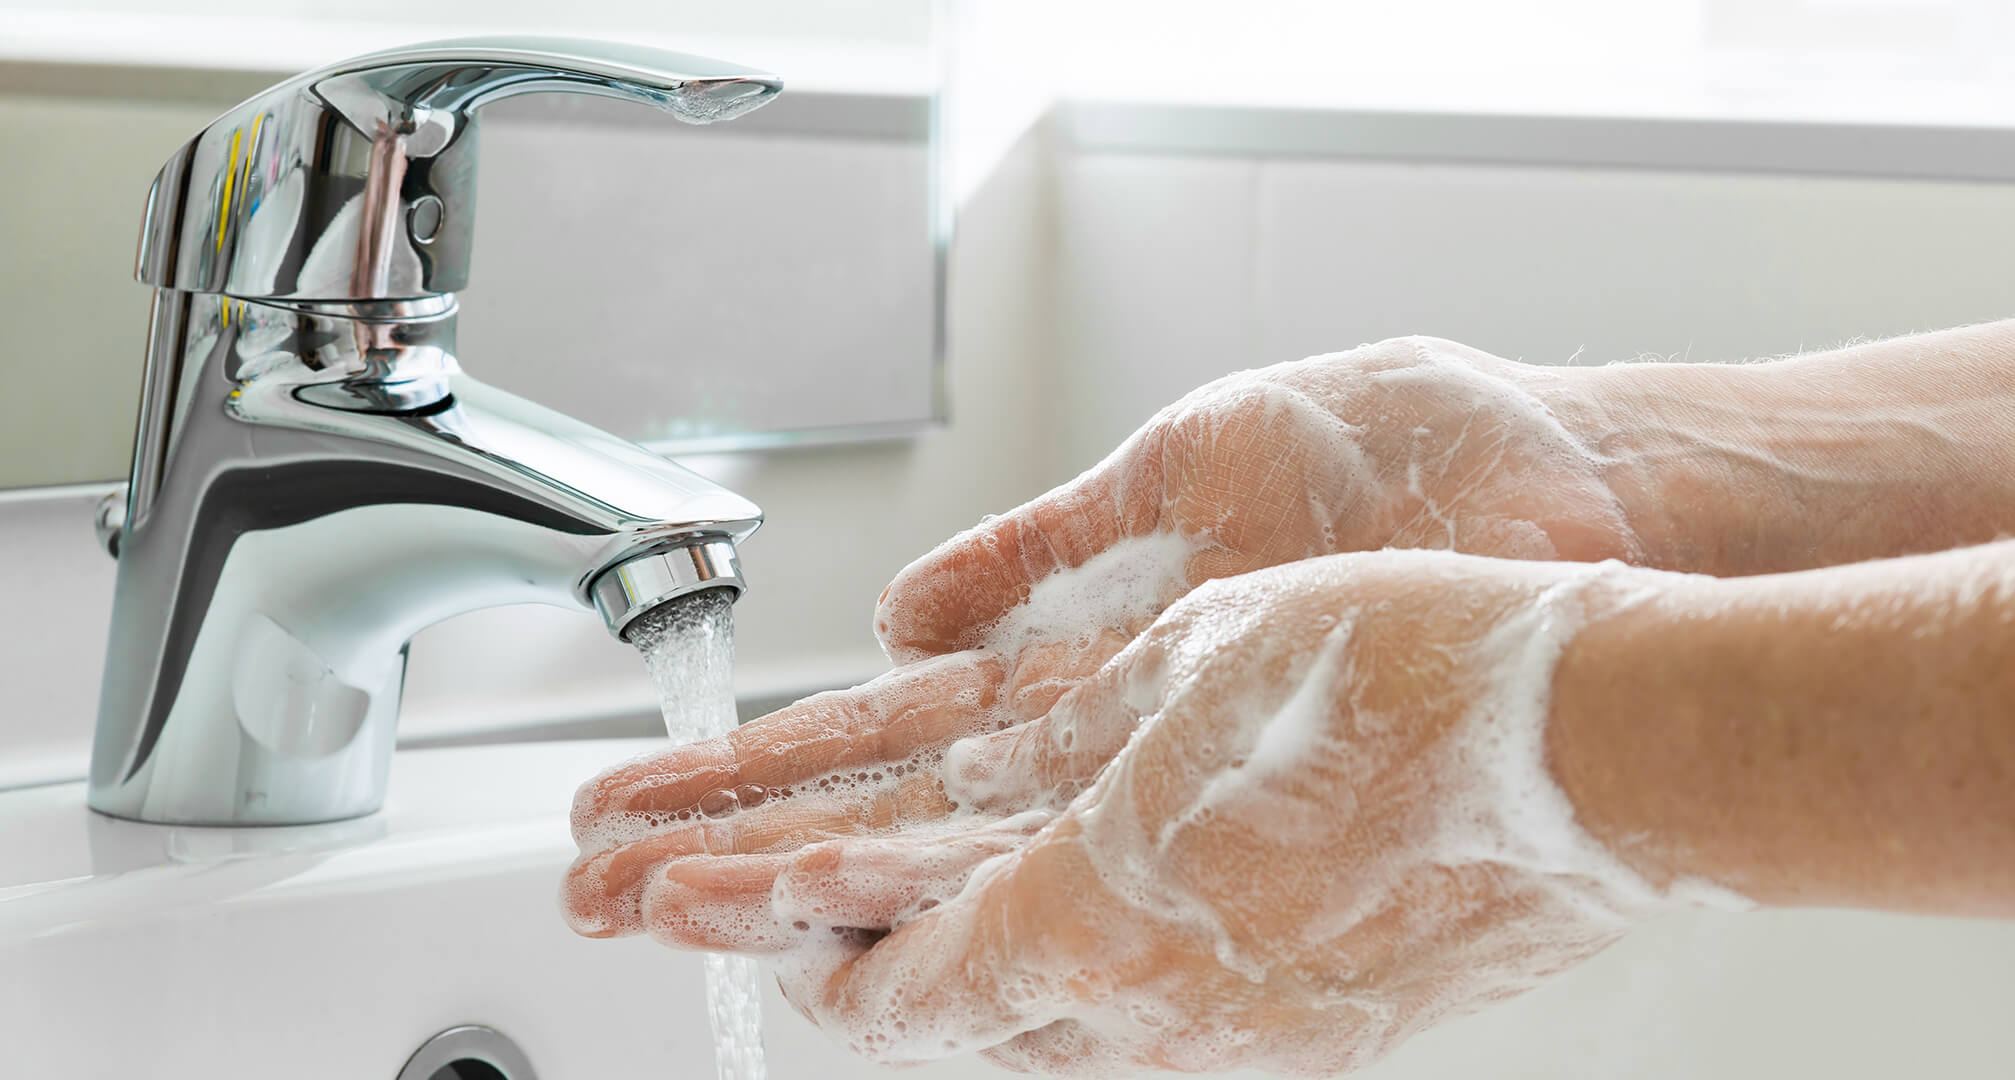 tvätta händerna med tvål under kran